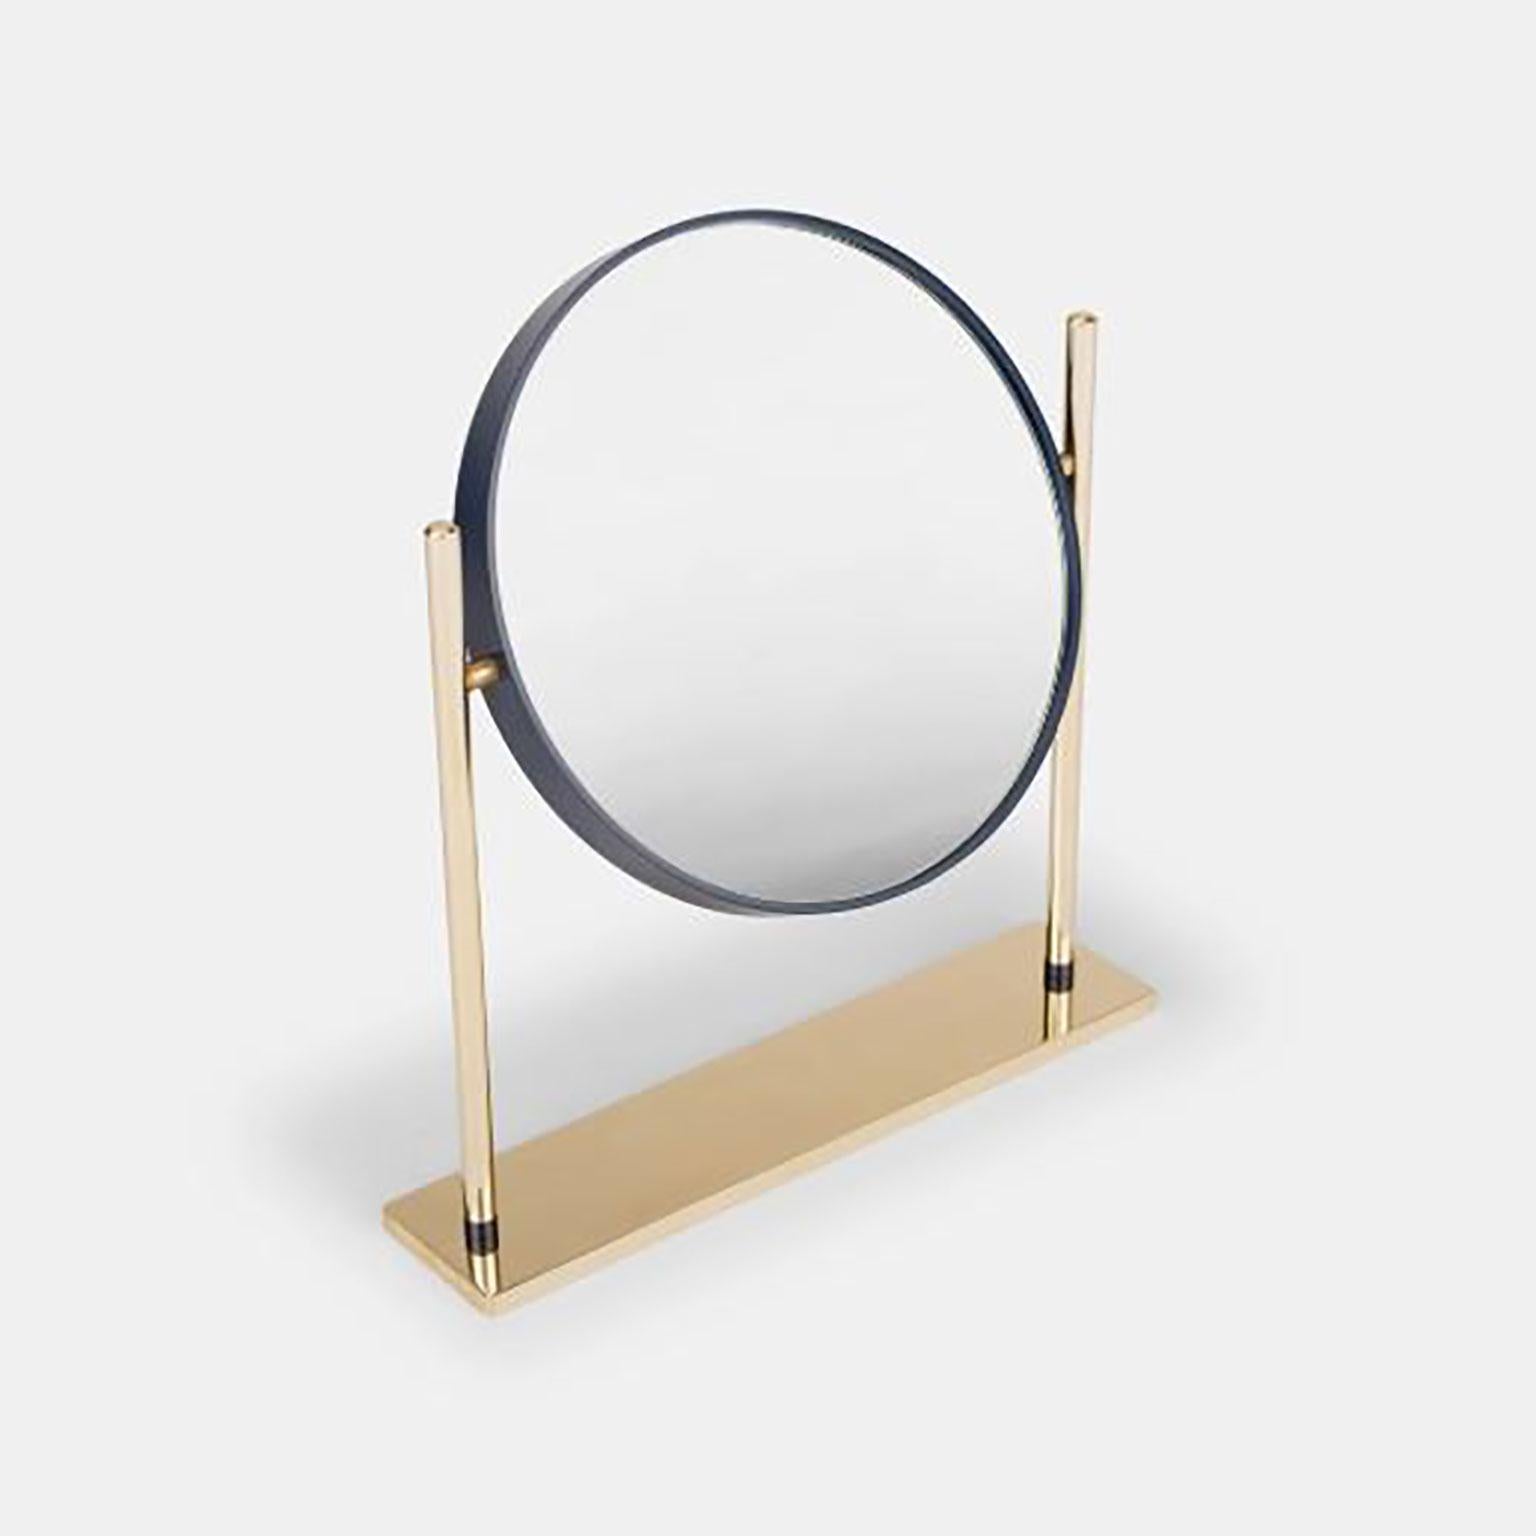 Mirro entworfen von Federica Biasi für Mingardo. Mirrò ist ein kleiner Tisch- und Badezimmerspiegel, ein raffiniertes Objekt, das seine Integrität durch seine Abmessungen und die Farbe des Bandes, das den Spiegel umgibt, offenbart. Die Wahl der